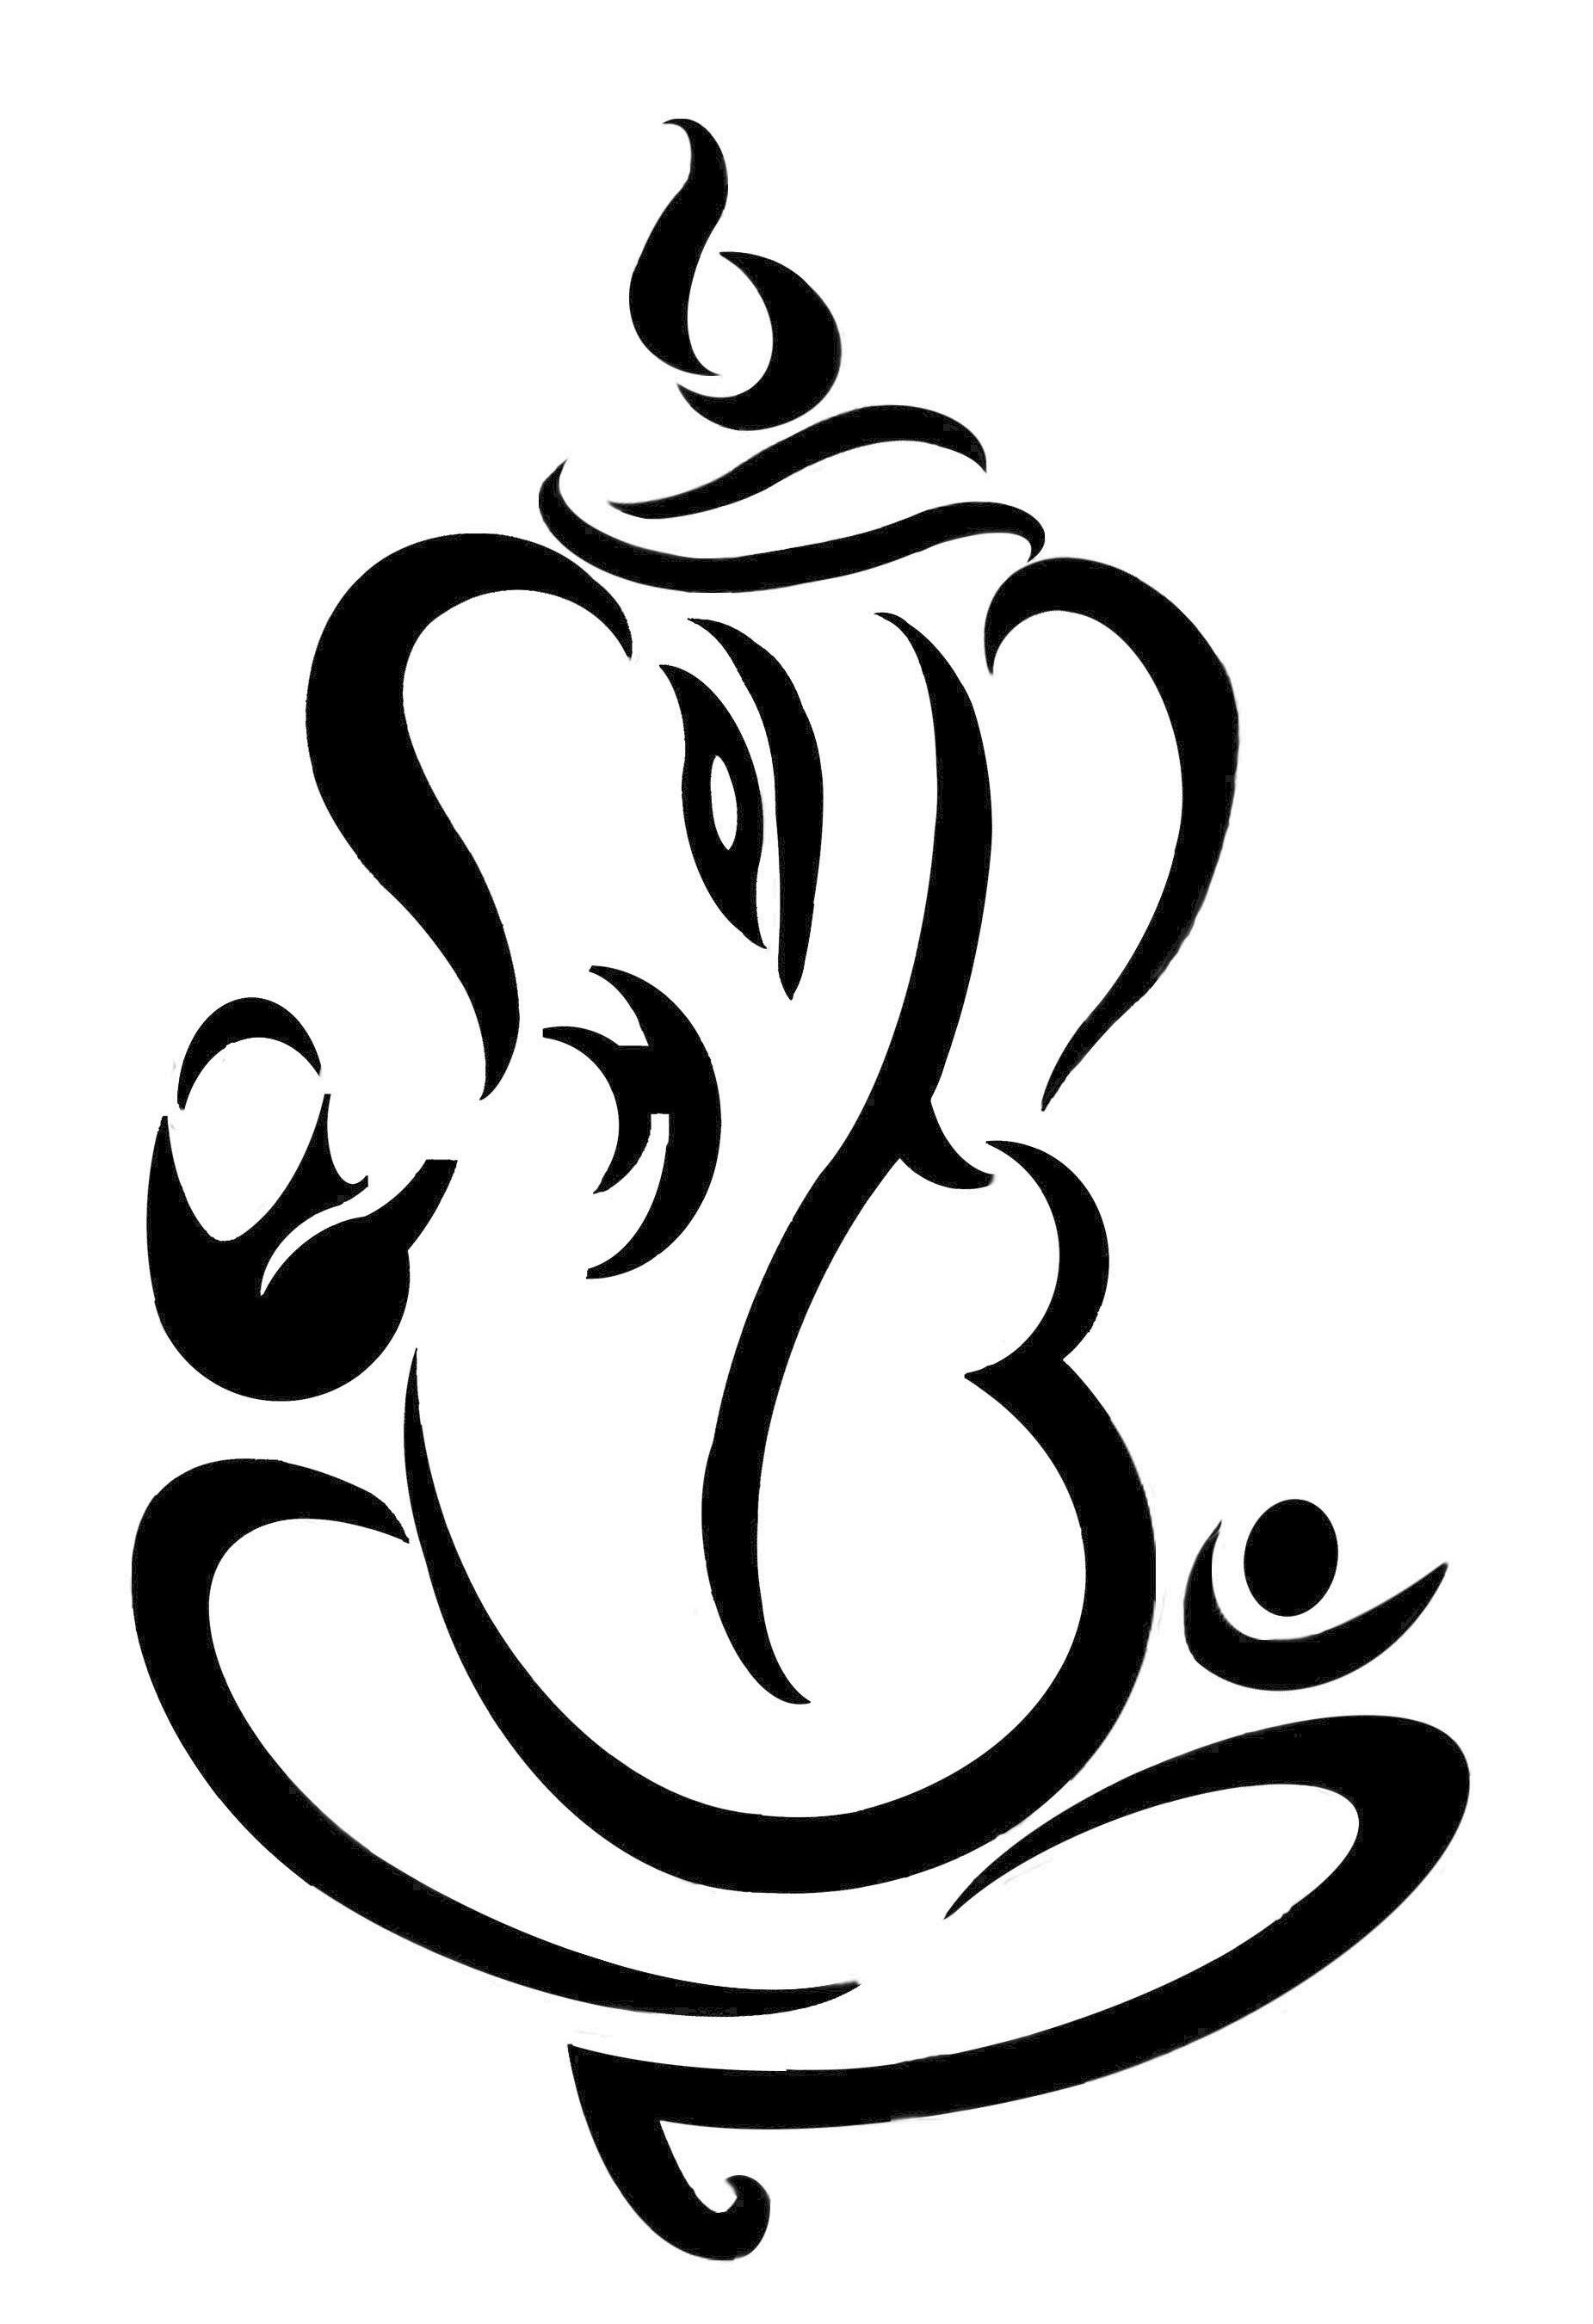 Ganesha Png Image Transparent Background Free Download - PNG Images